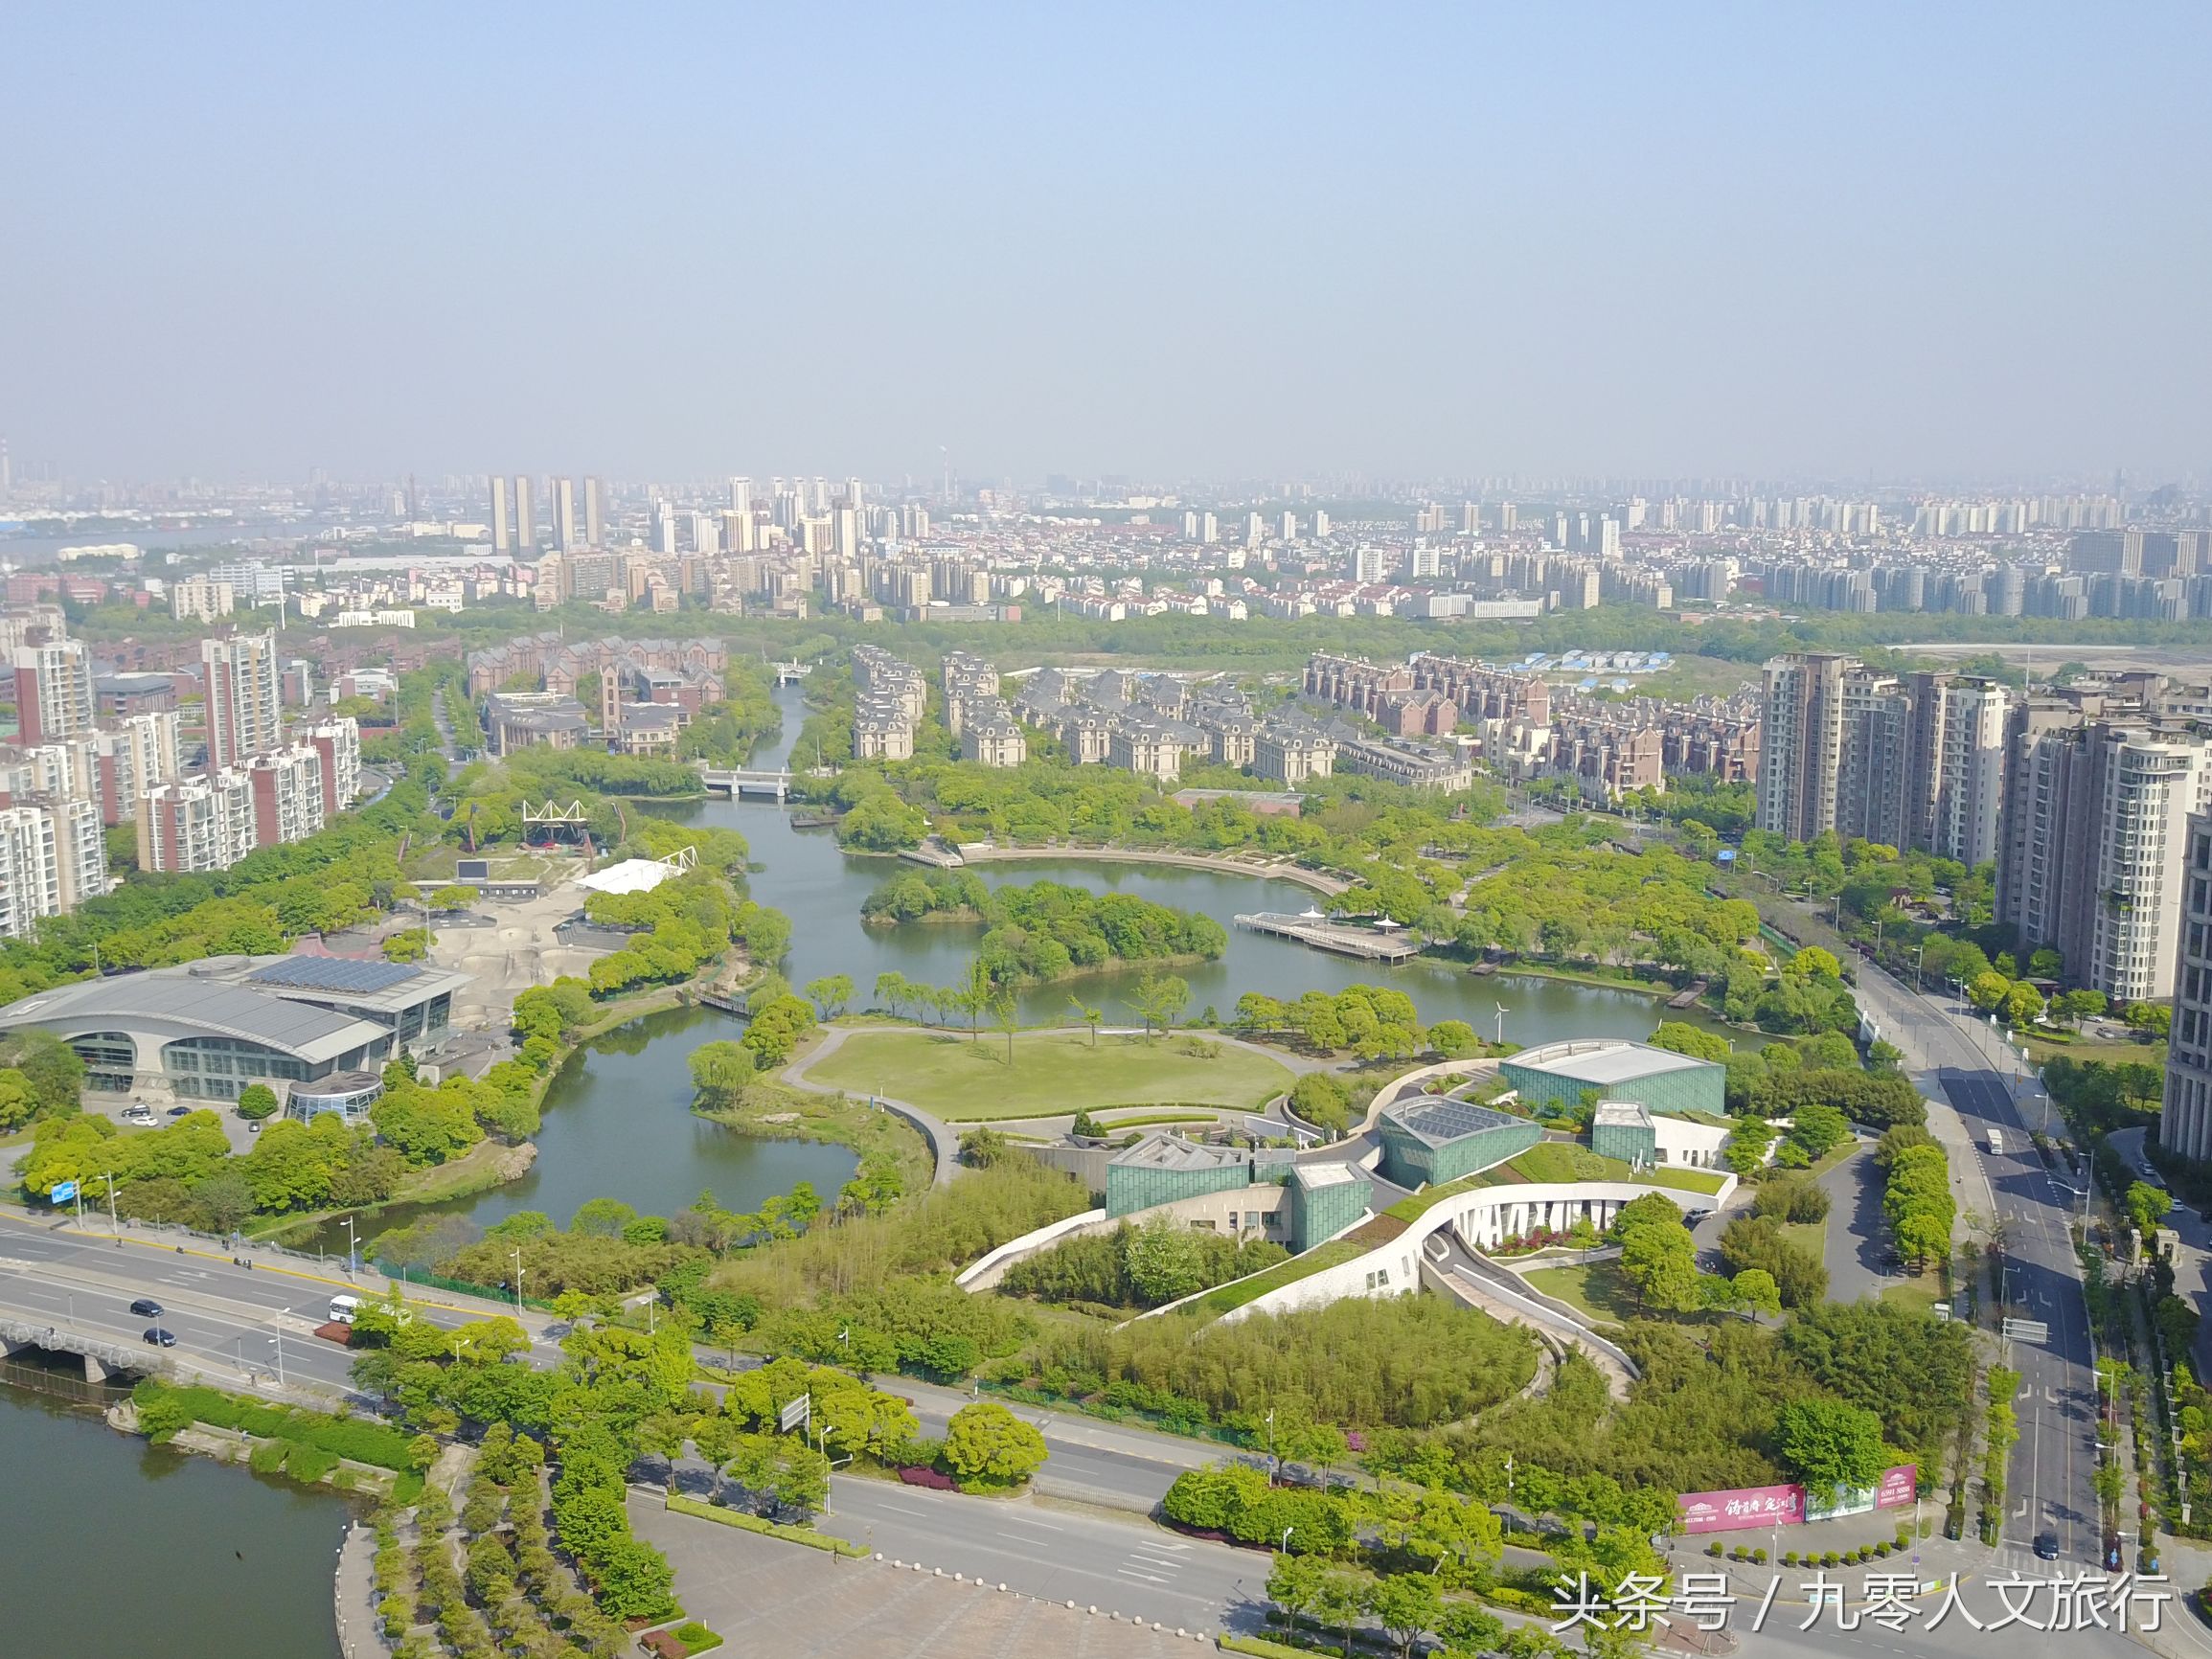 上海市新江湾城是上海市新江的一处湿地公园,原系江湾机场的旧址,这里